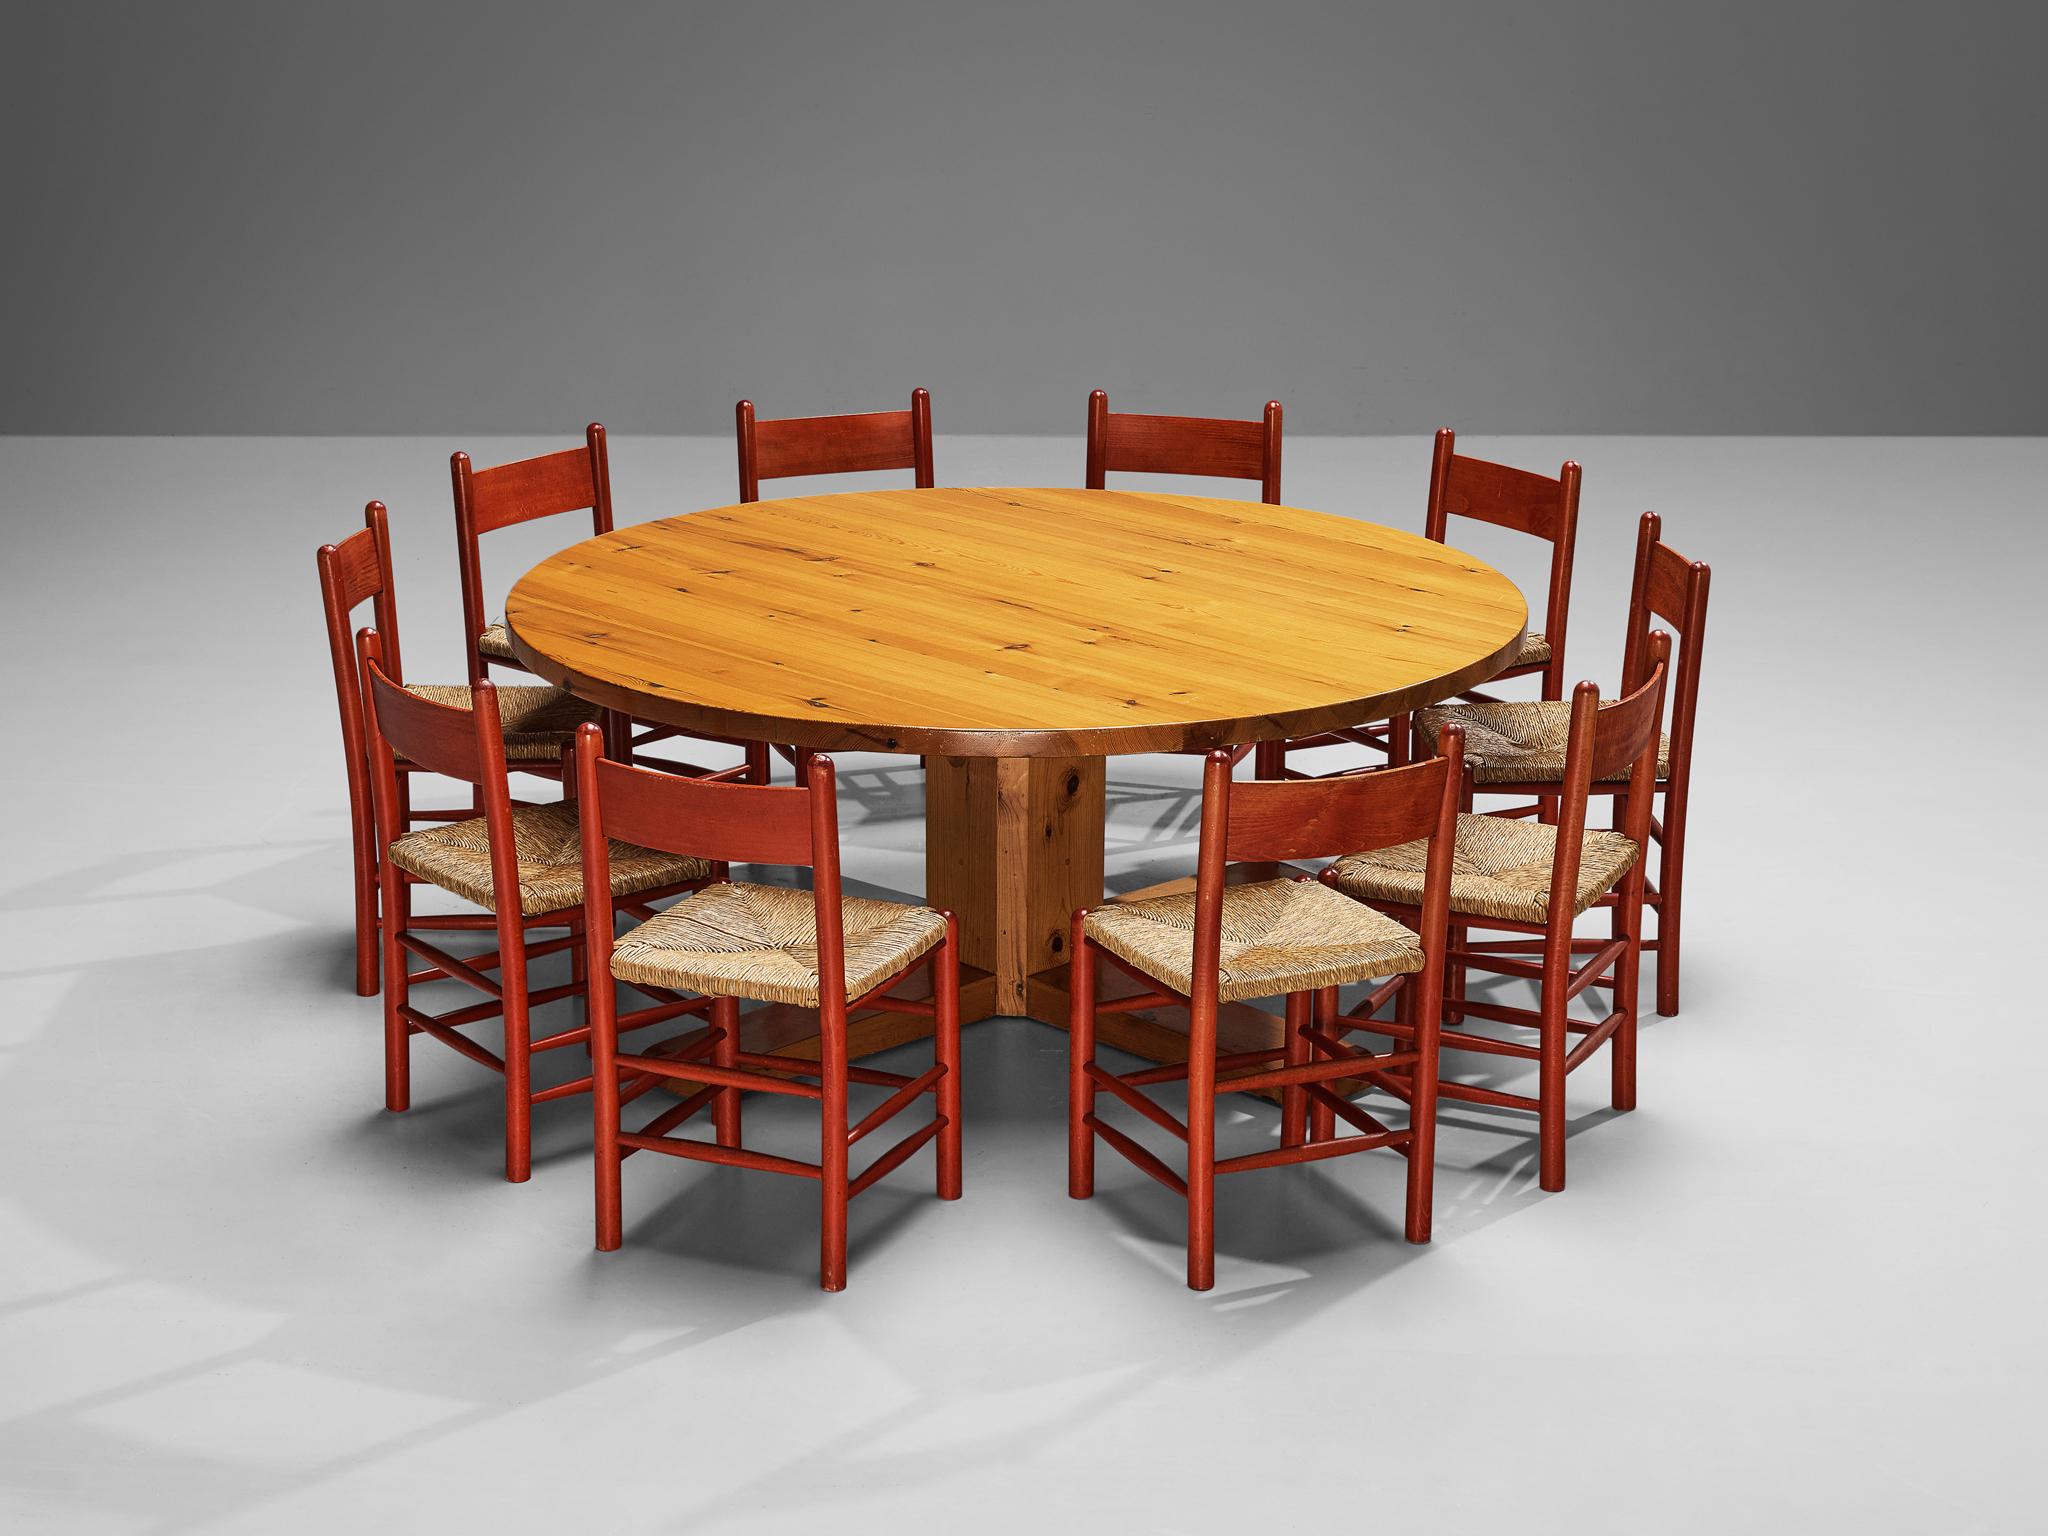 Magnifique ensemble de salle à manger composé d'une grande table espagnole en pin massif et de huit chaises de salle à manger françaises en hêtre laqué rouge avec assise en paille. 

Grande table de salle à manger, pin massif, Espagne, années